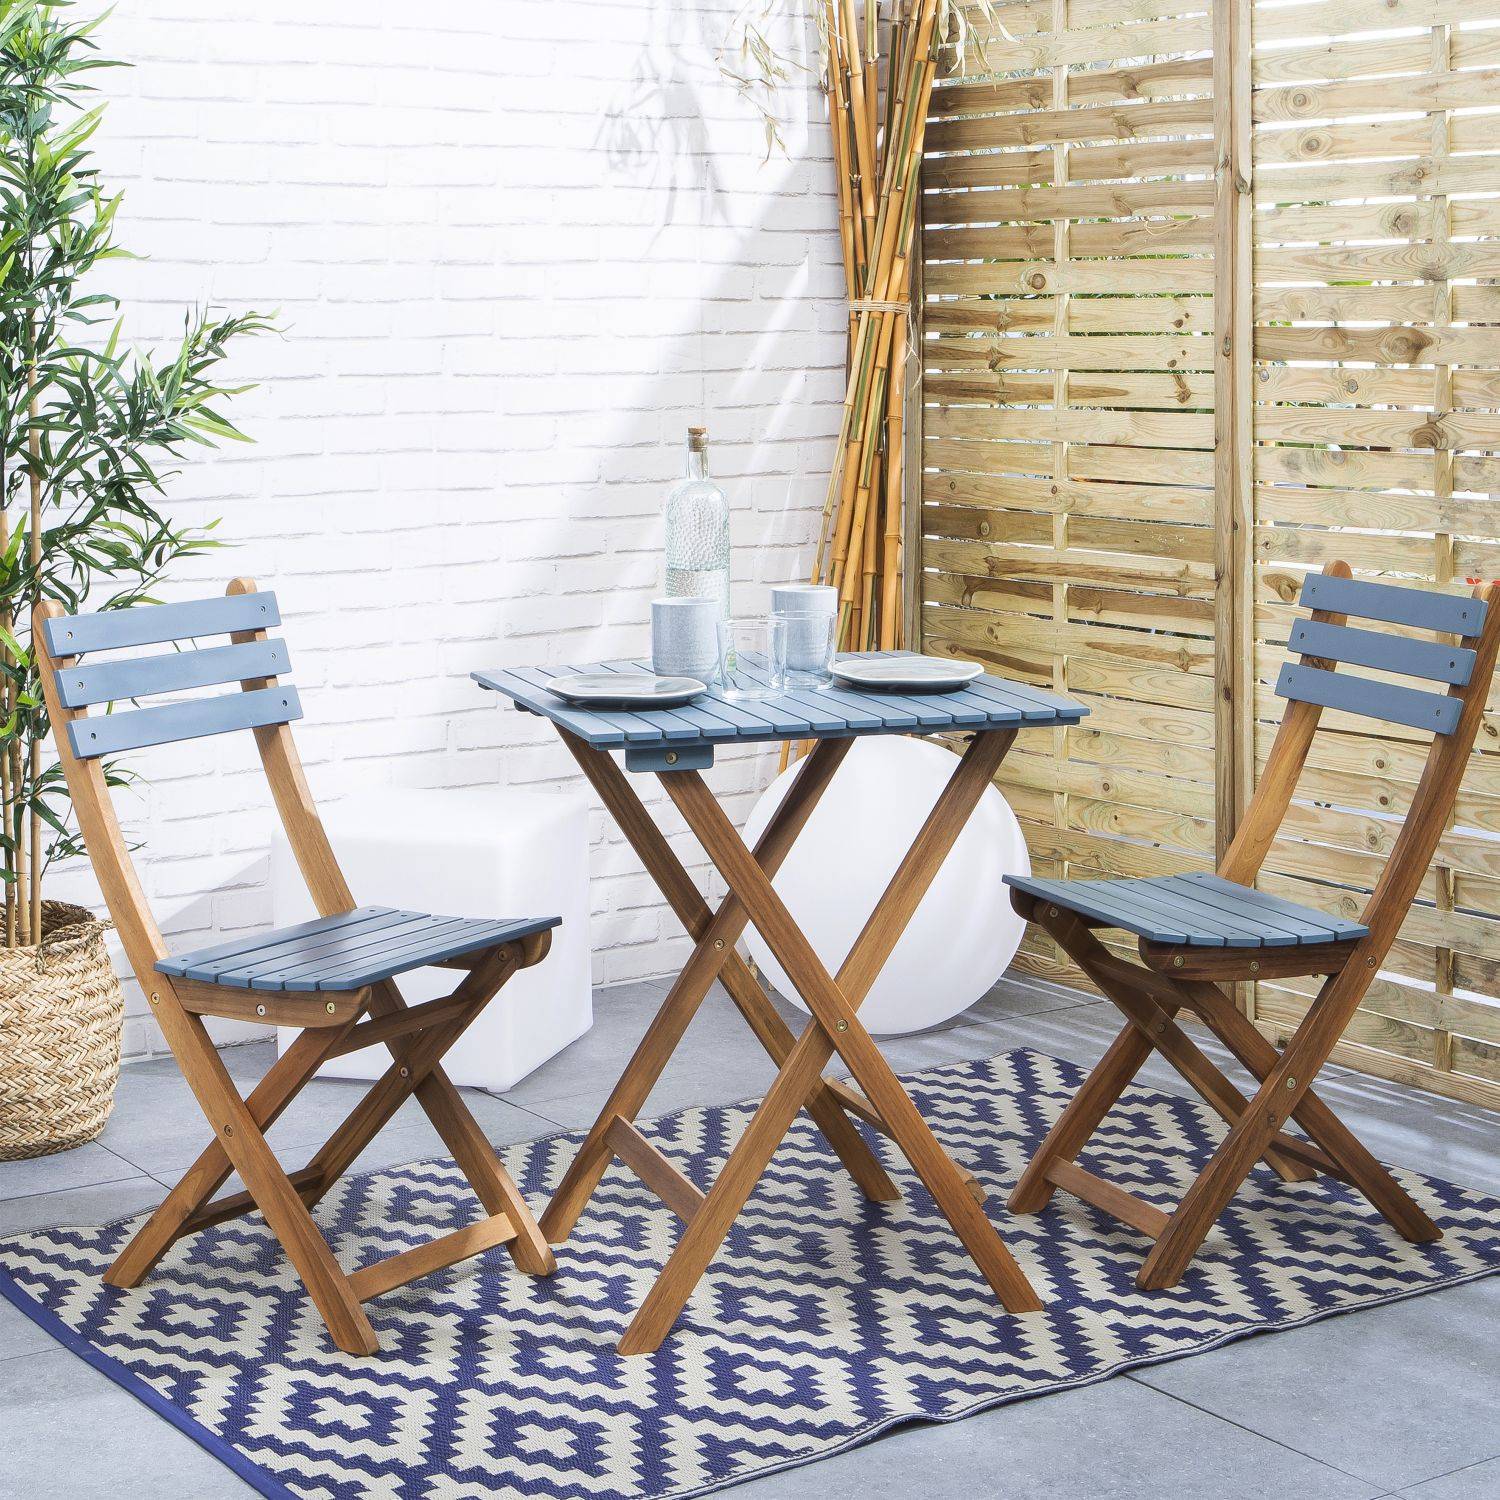 Bistro-Gartentisch aus Holz 60x60cm - Barcelona Holz / blaugrau - zweifarbig quadratisch Klappbar aus Akazie mit 2 Klappstühlen Photo1